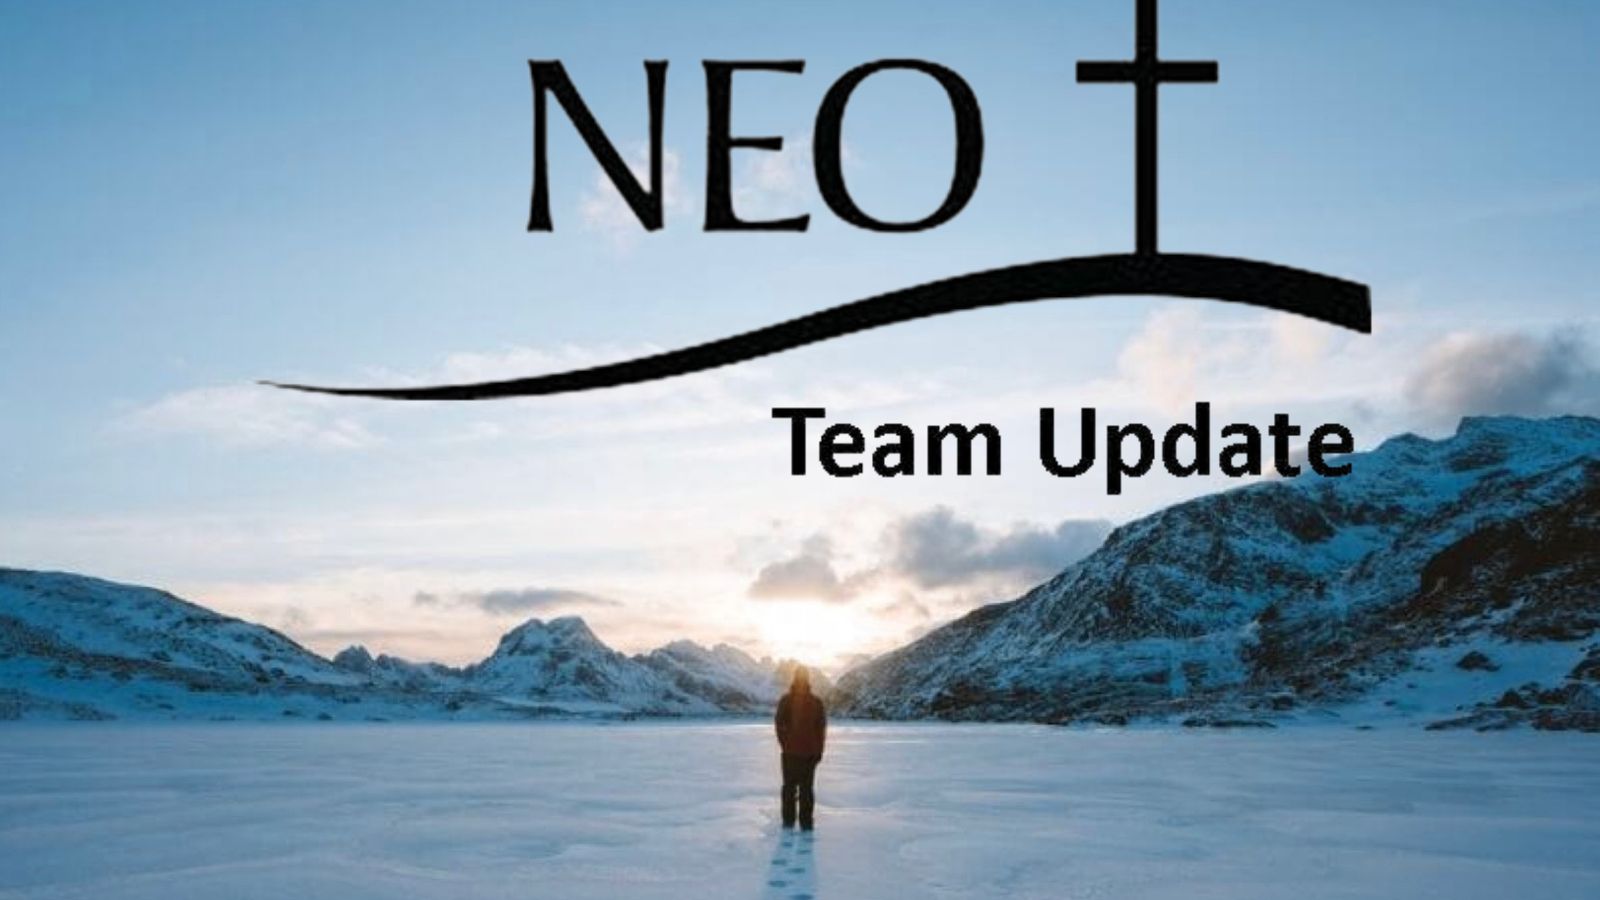 NEO Team Update